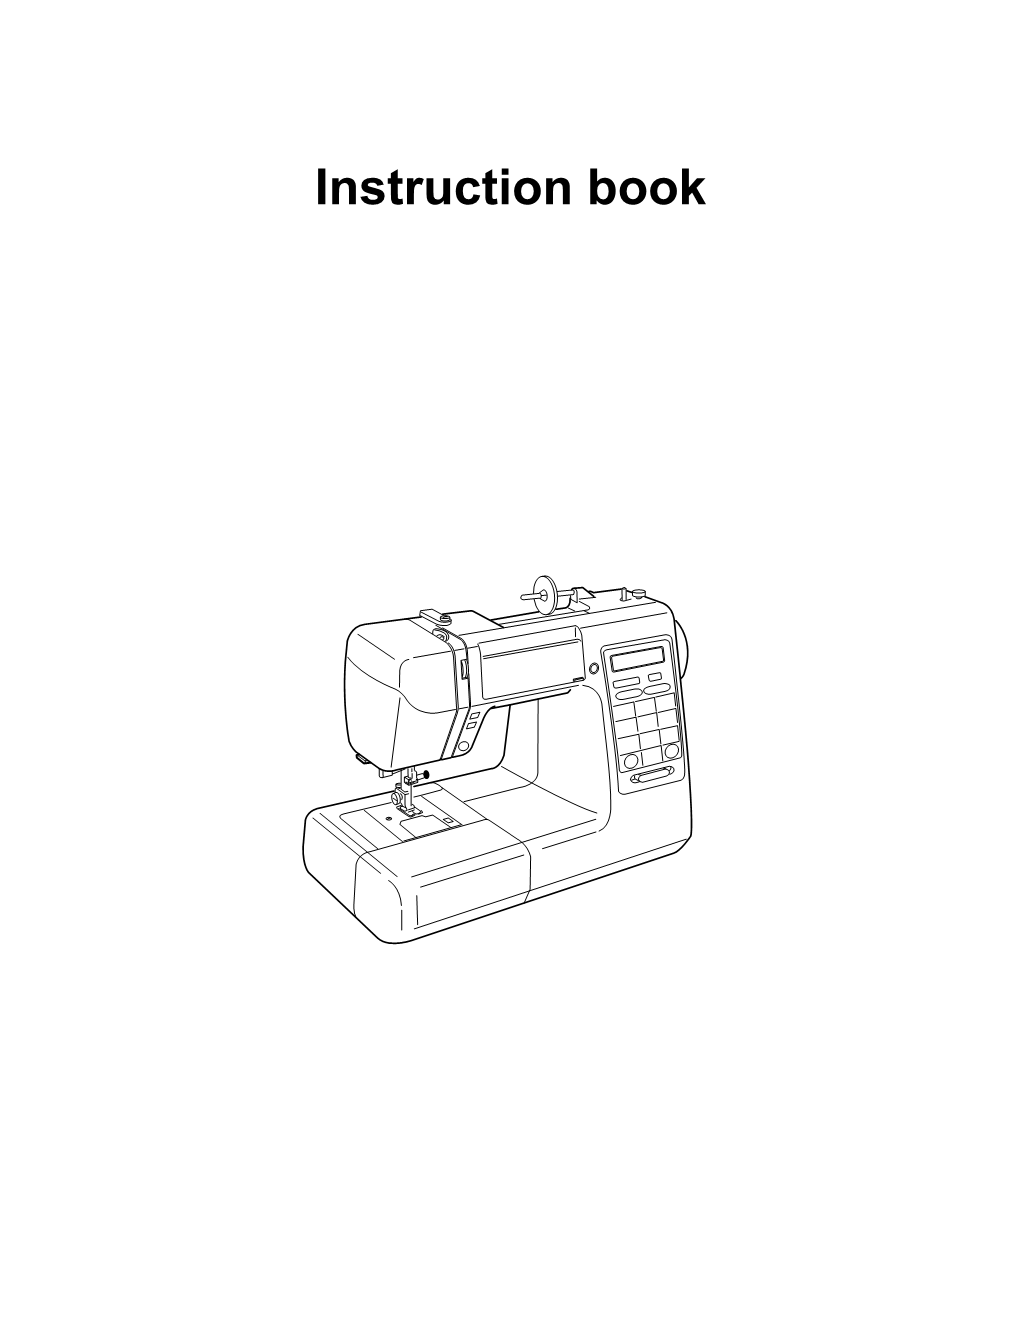 Download DC5100 Manual